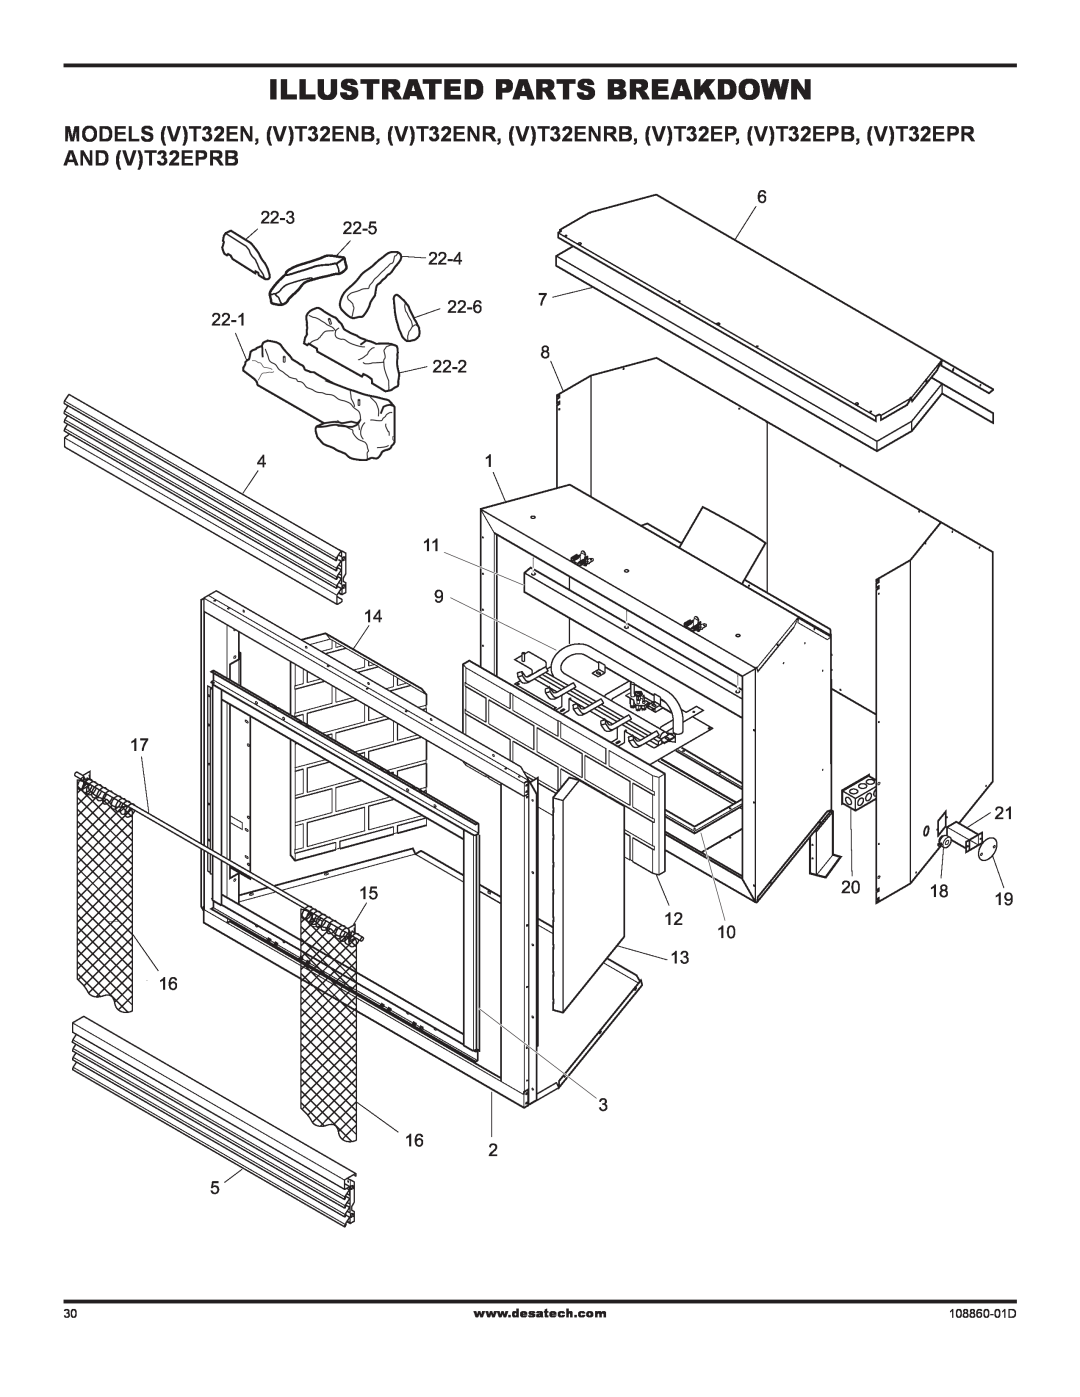 Desa (V)T32EN installation manual Illustrated Parts Breakdown, 108860-01D 